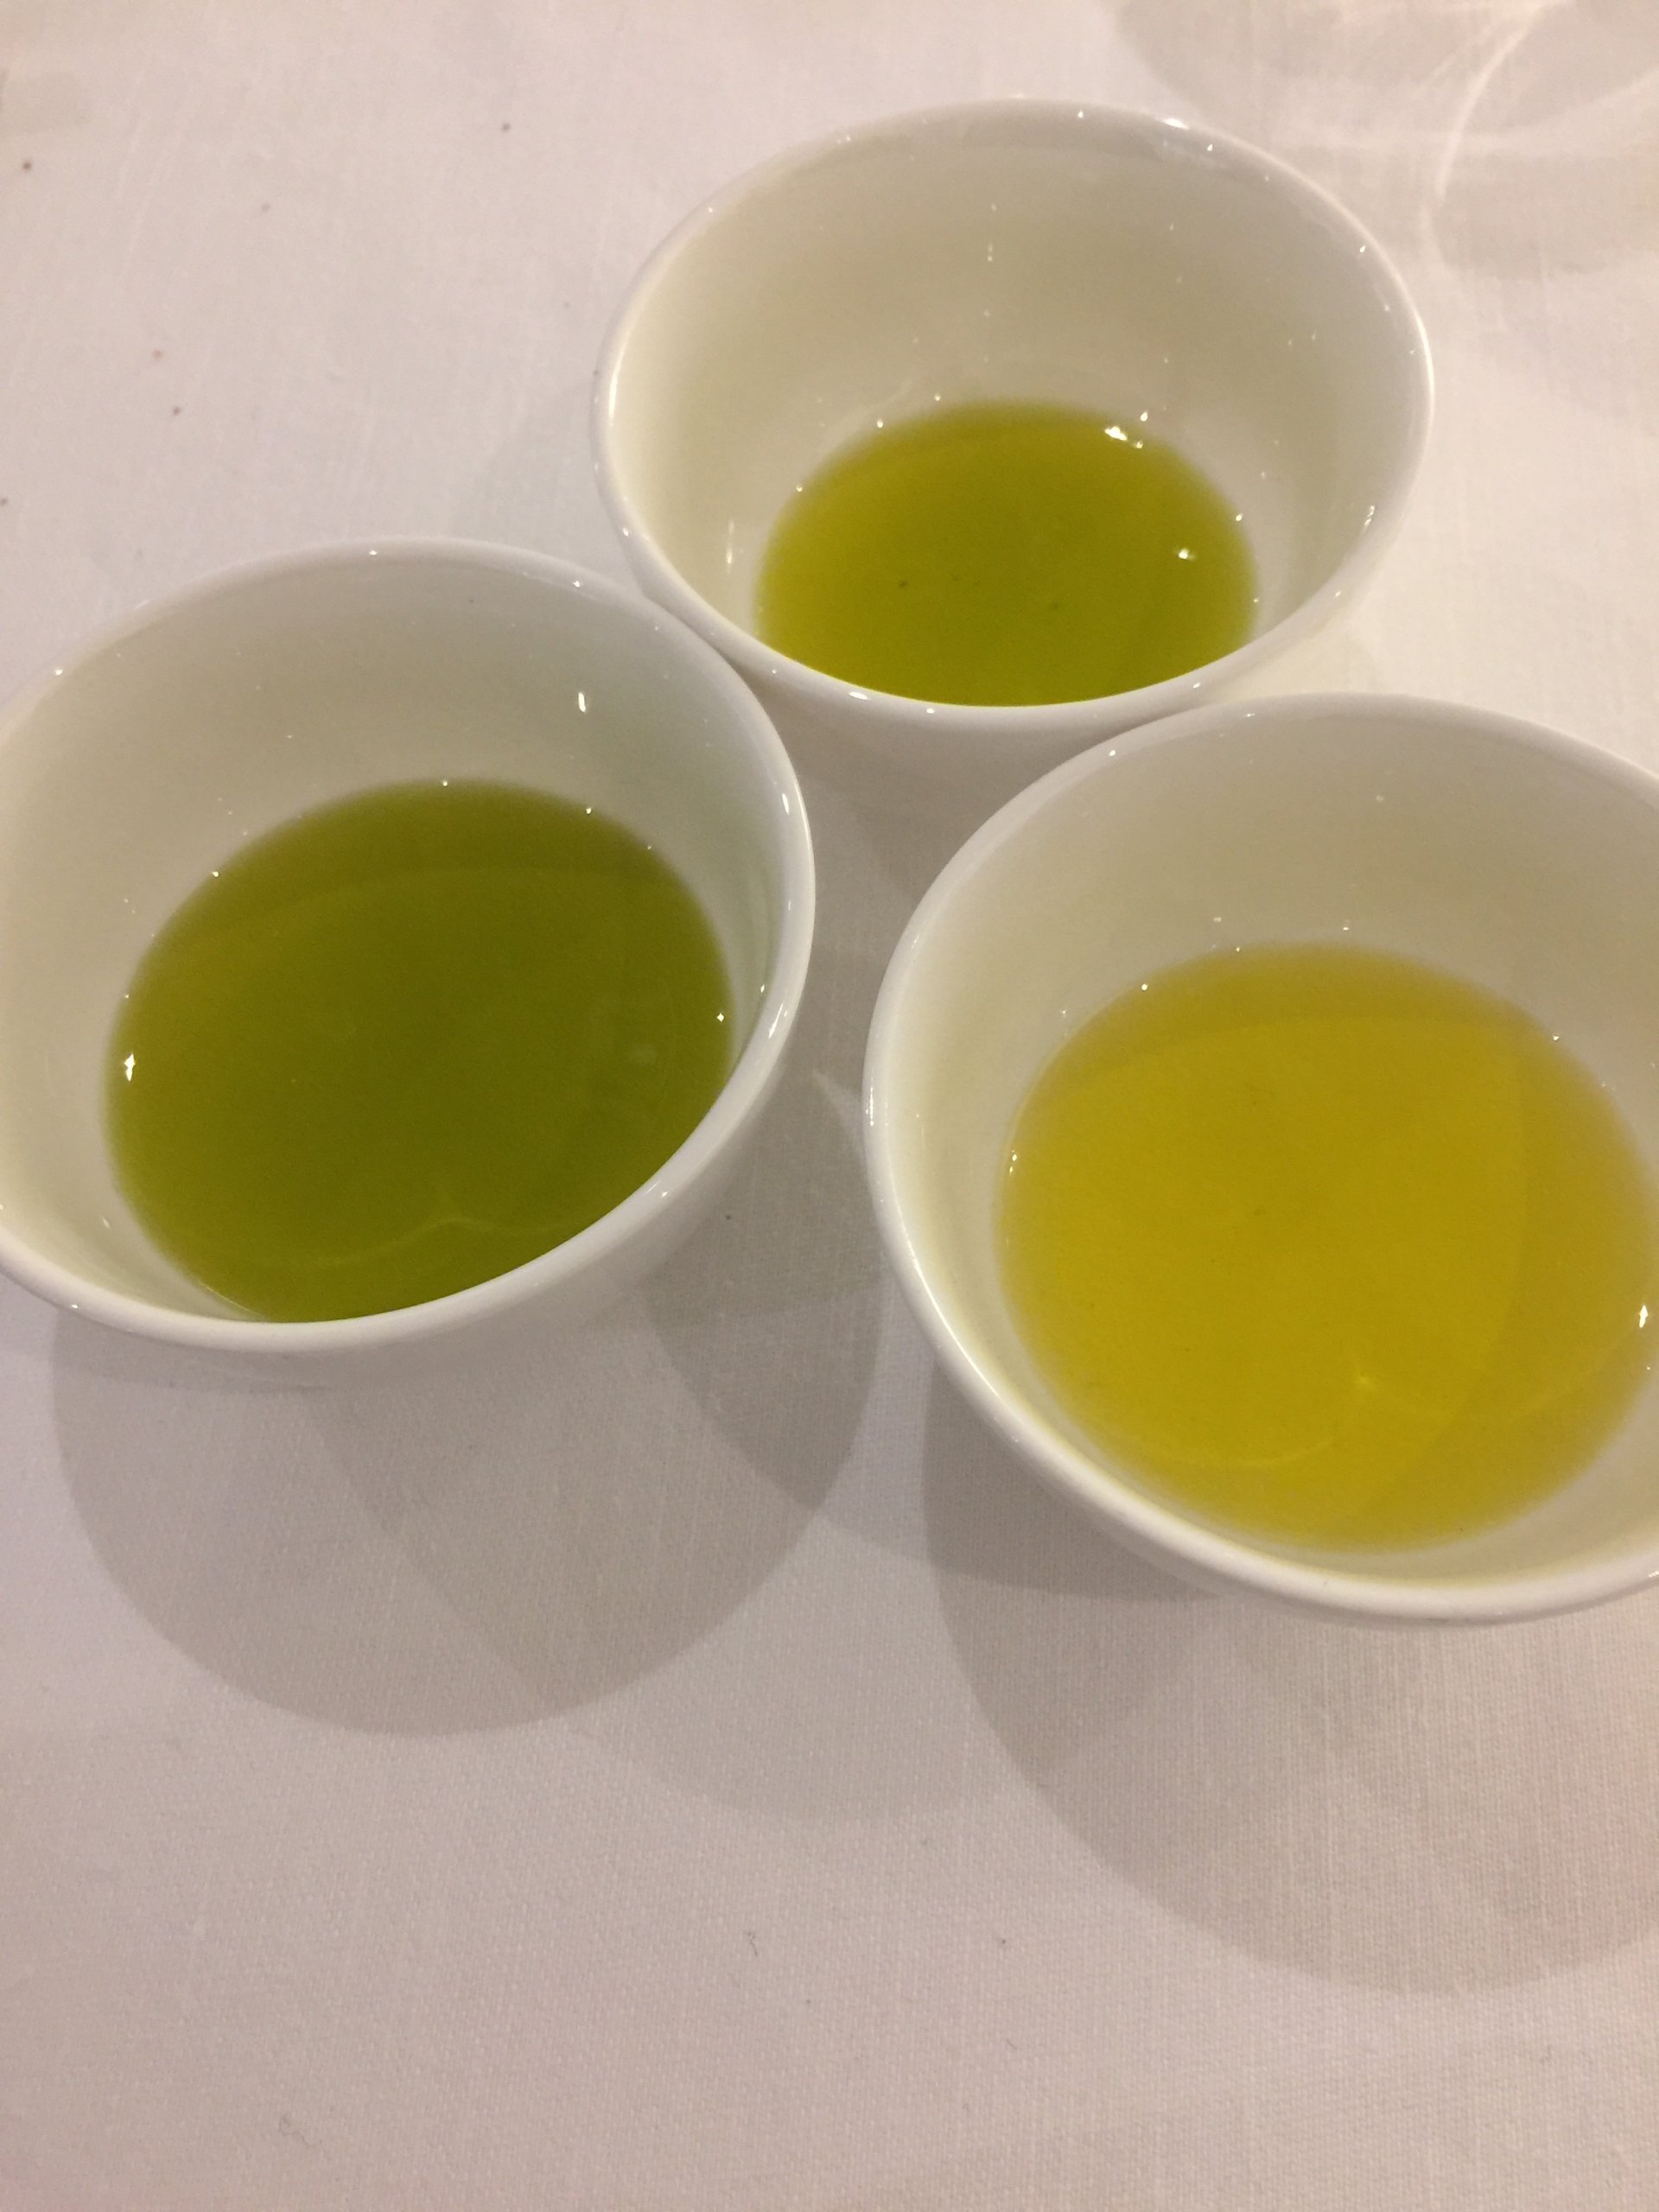 Coi, ultimi aggiornamenti sui prezzi alla produzione dell’olio da olive dei mercati principali